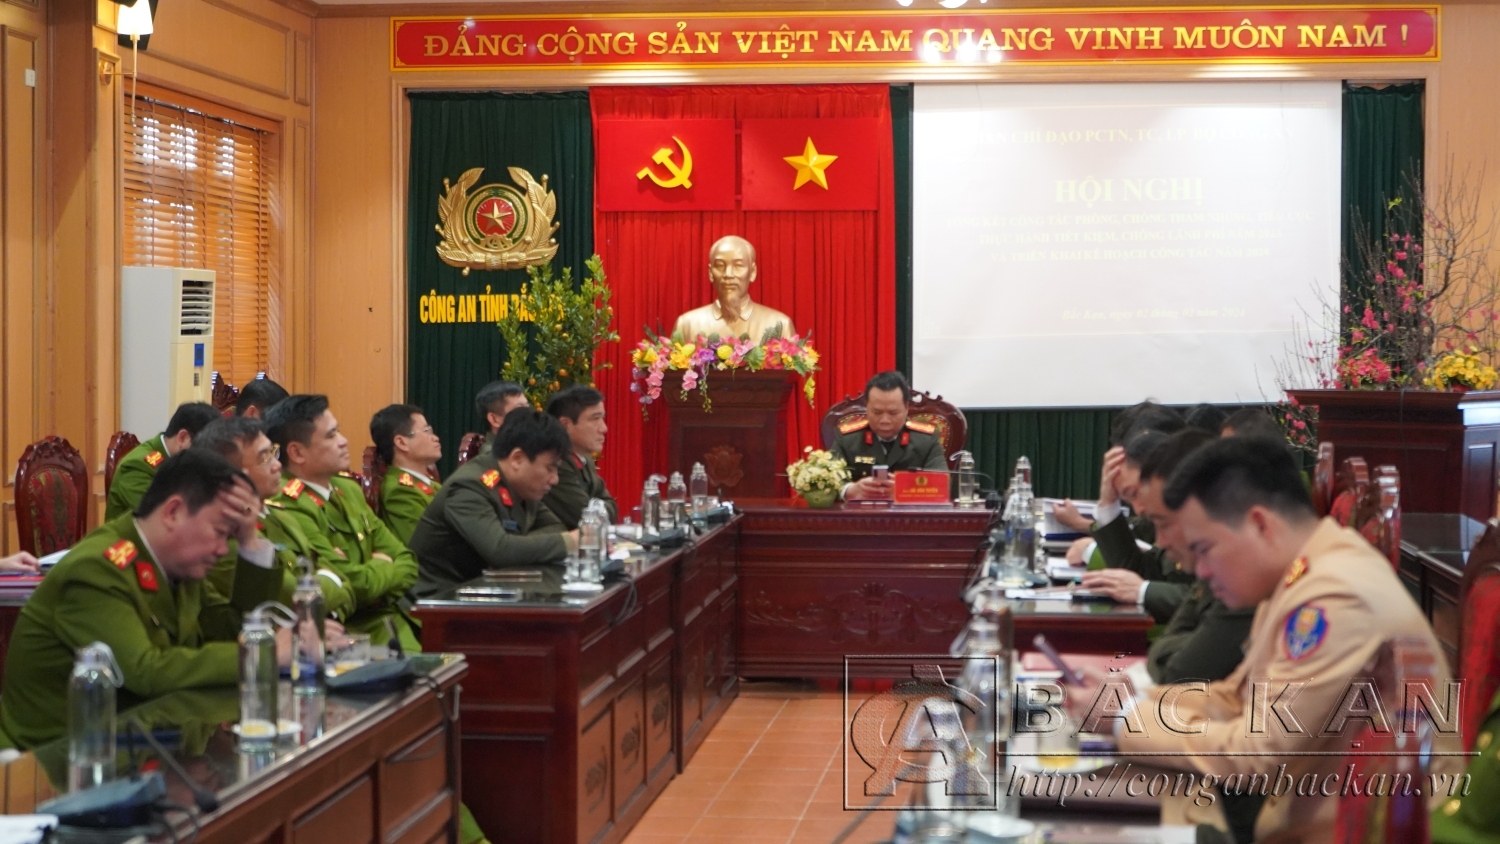 Đại tá Hà Văn Tuyên, Uỷ viên Ban thường vụ Tỉnh uỷ, Bí thư Đảng uỷ, Giám đốc Công an tỉnh chủ trì hội nghị tại điểm cầu Công an tỉnh Bắc Kạn